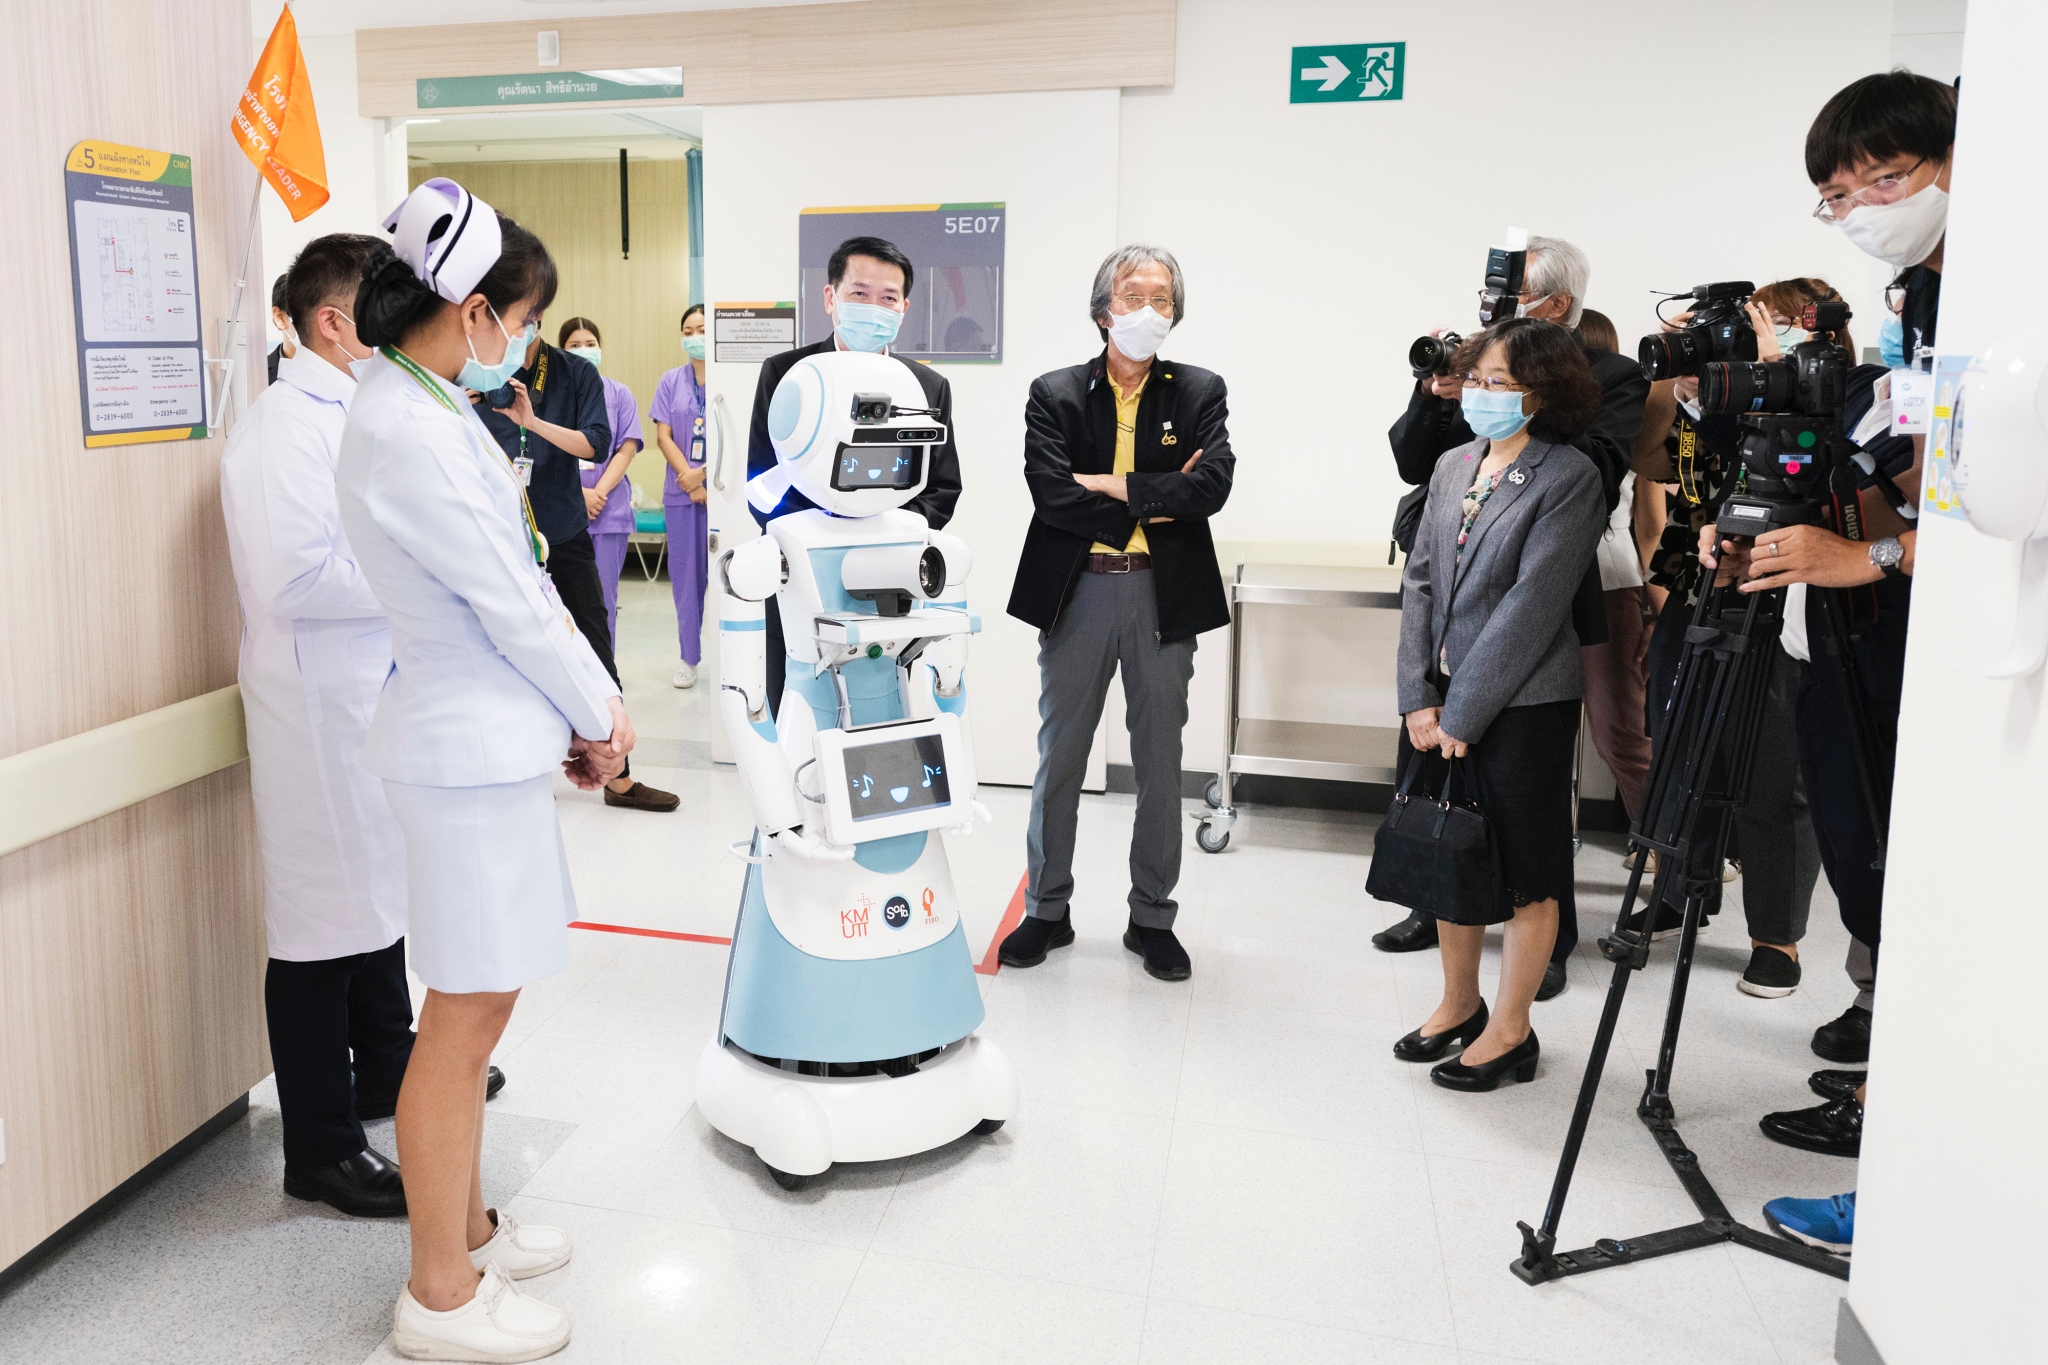 มจธ. ส่งมอบ หุ่นยนต์ “มดบริรักษ์” ชุดแรก ประจำการช่วยสนับสนุนบุคลากรทางการแพทย์ดูแลผู้ป่วย COVID-19